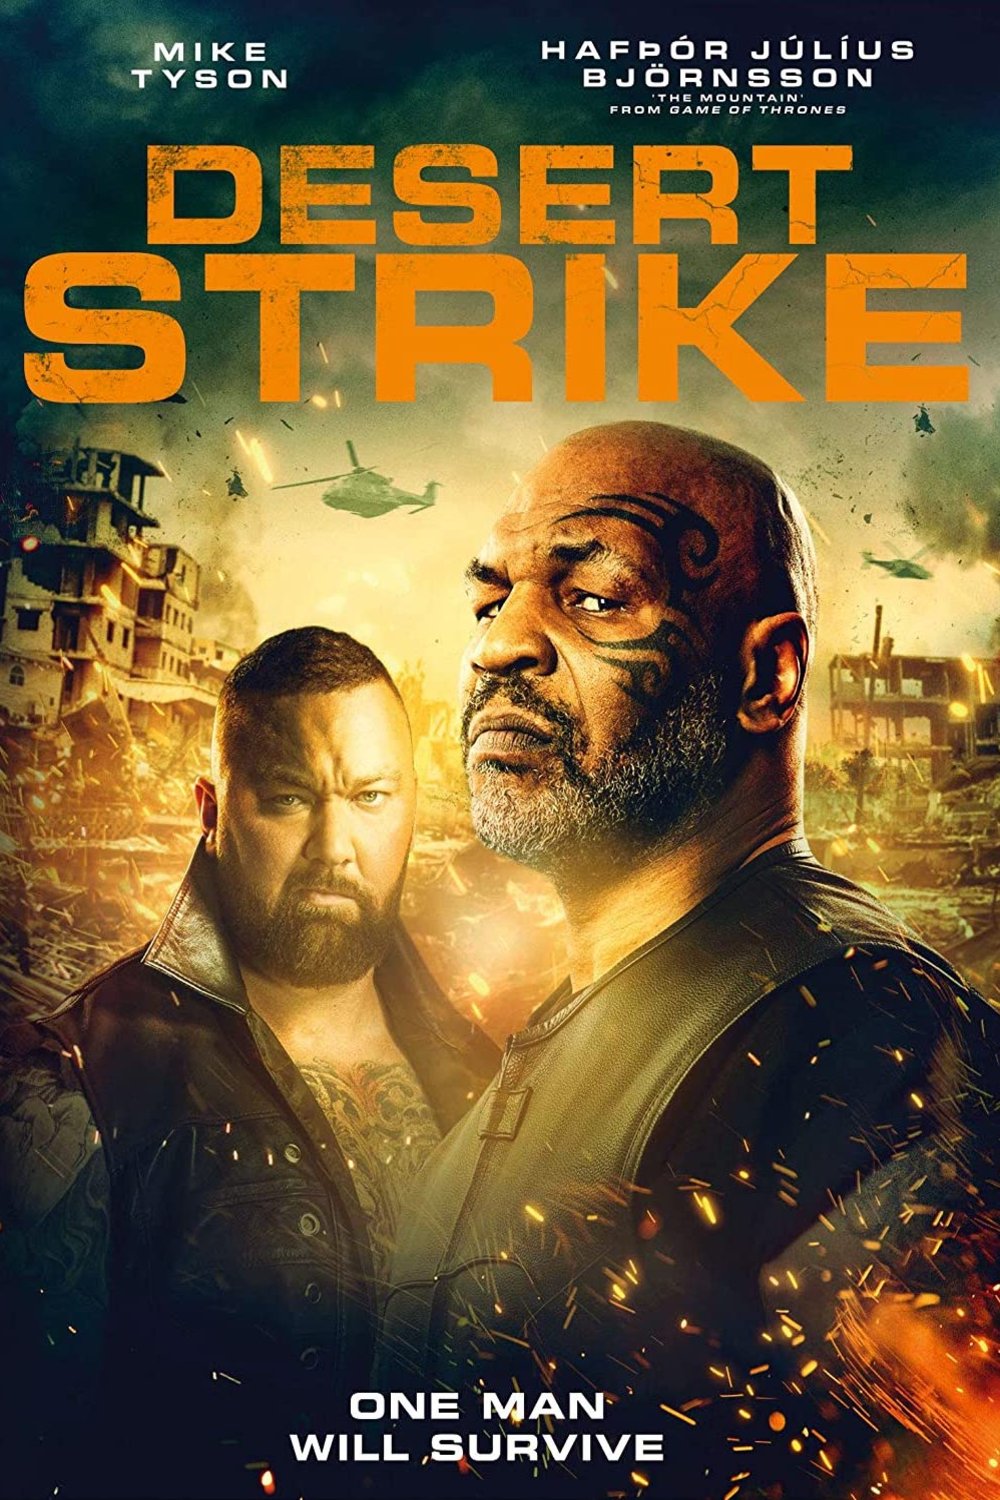 Poster of the movie Desert Strike